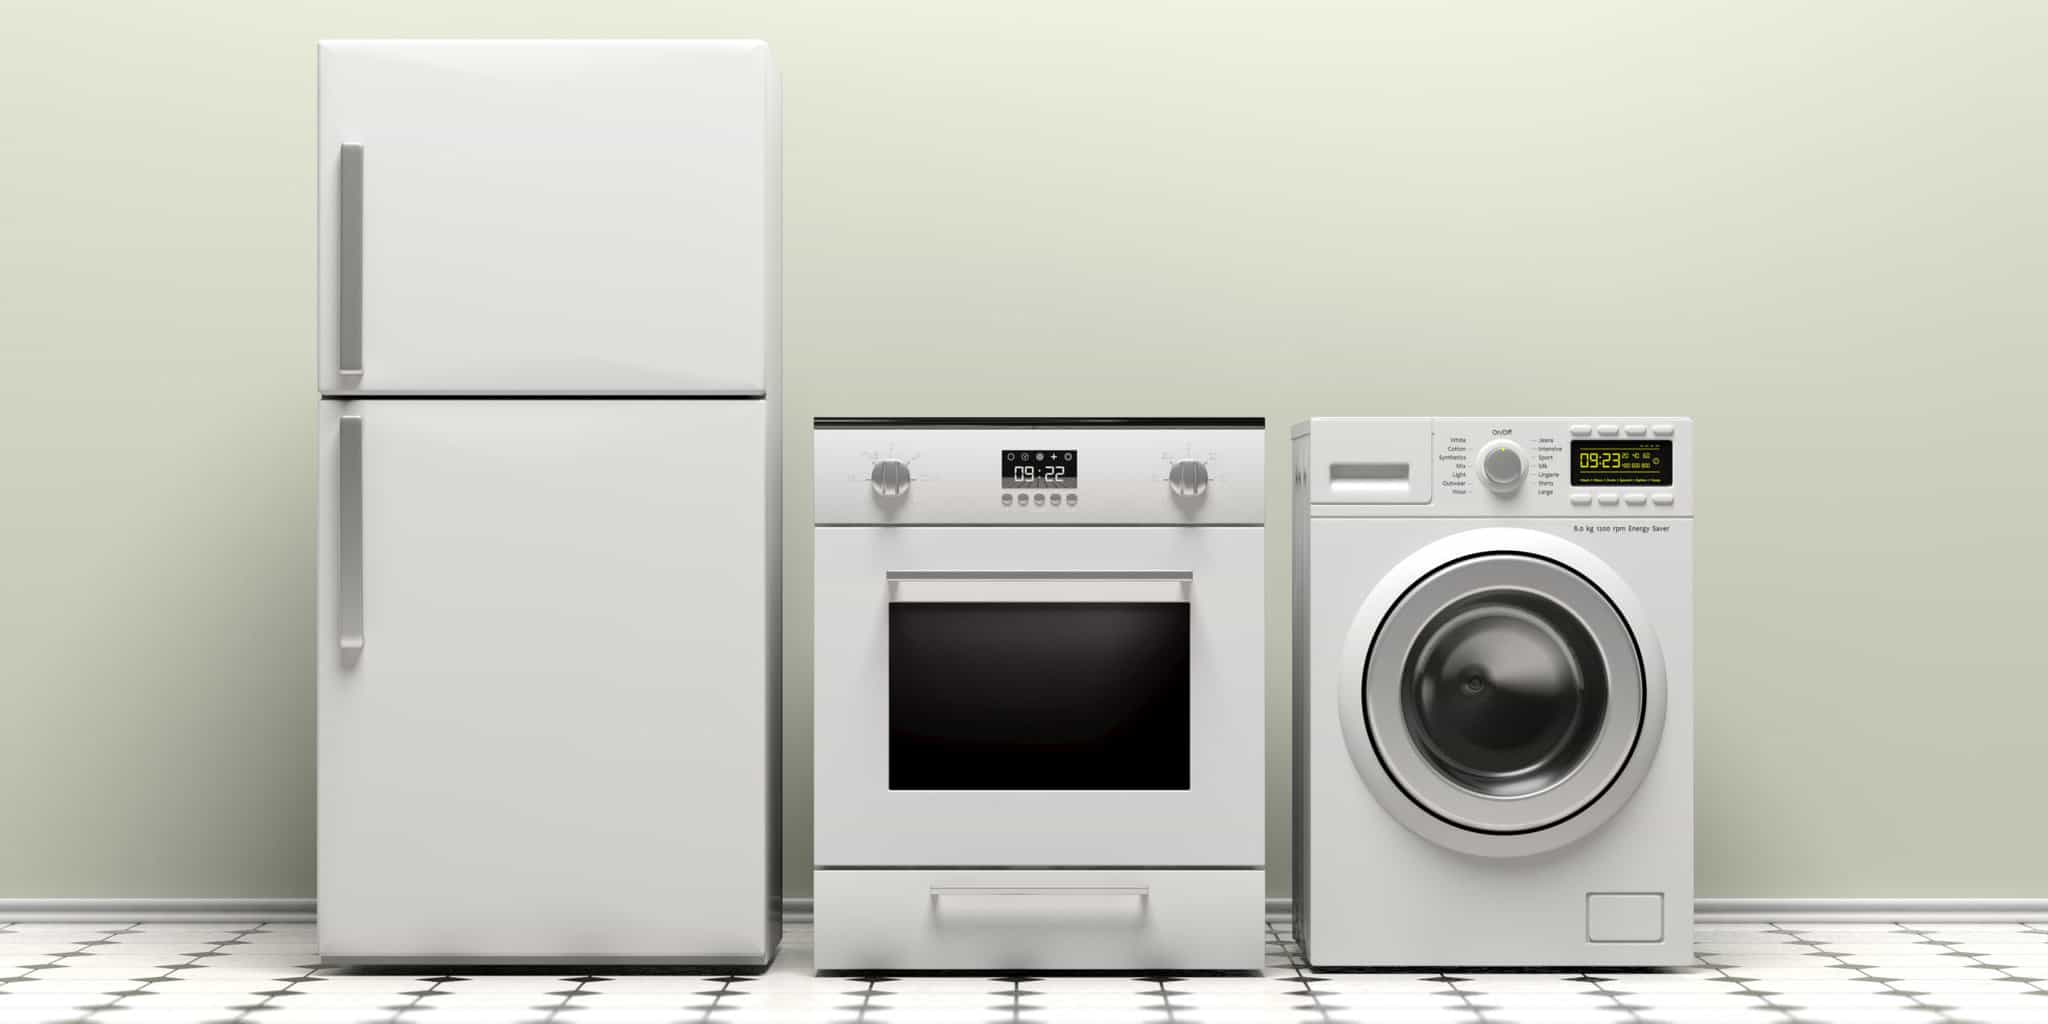 kitchenaid pro 5 plus mixer - appliances - by owner - sale - craigslist